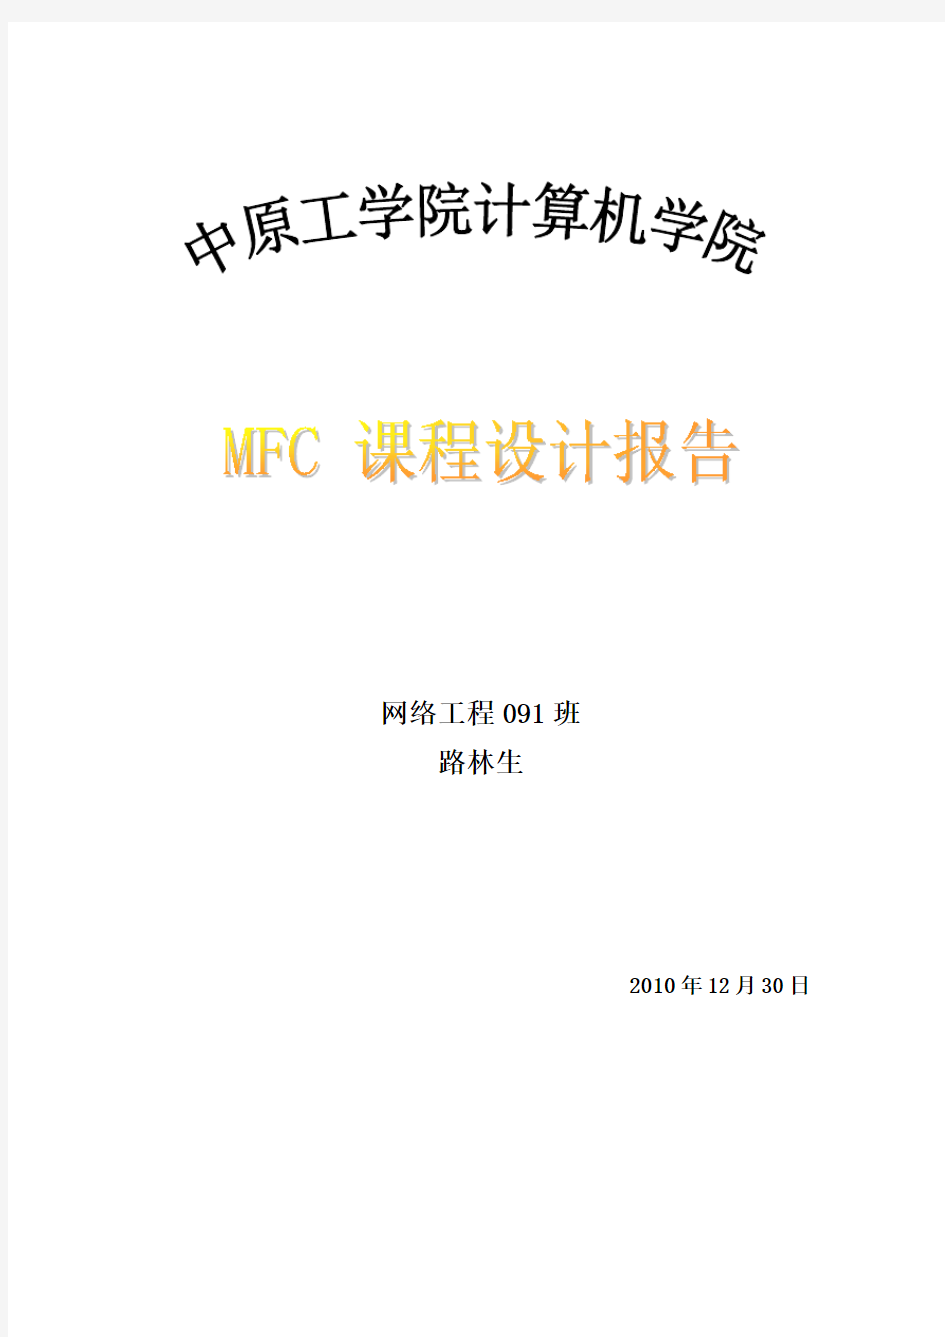 mfc简单绘图程序设计报告